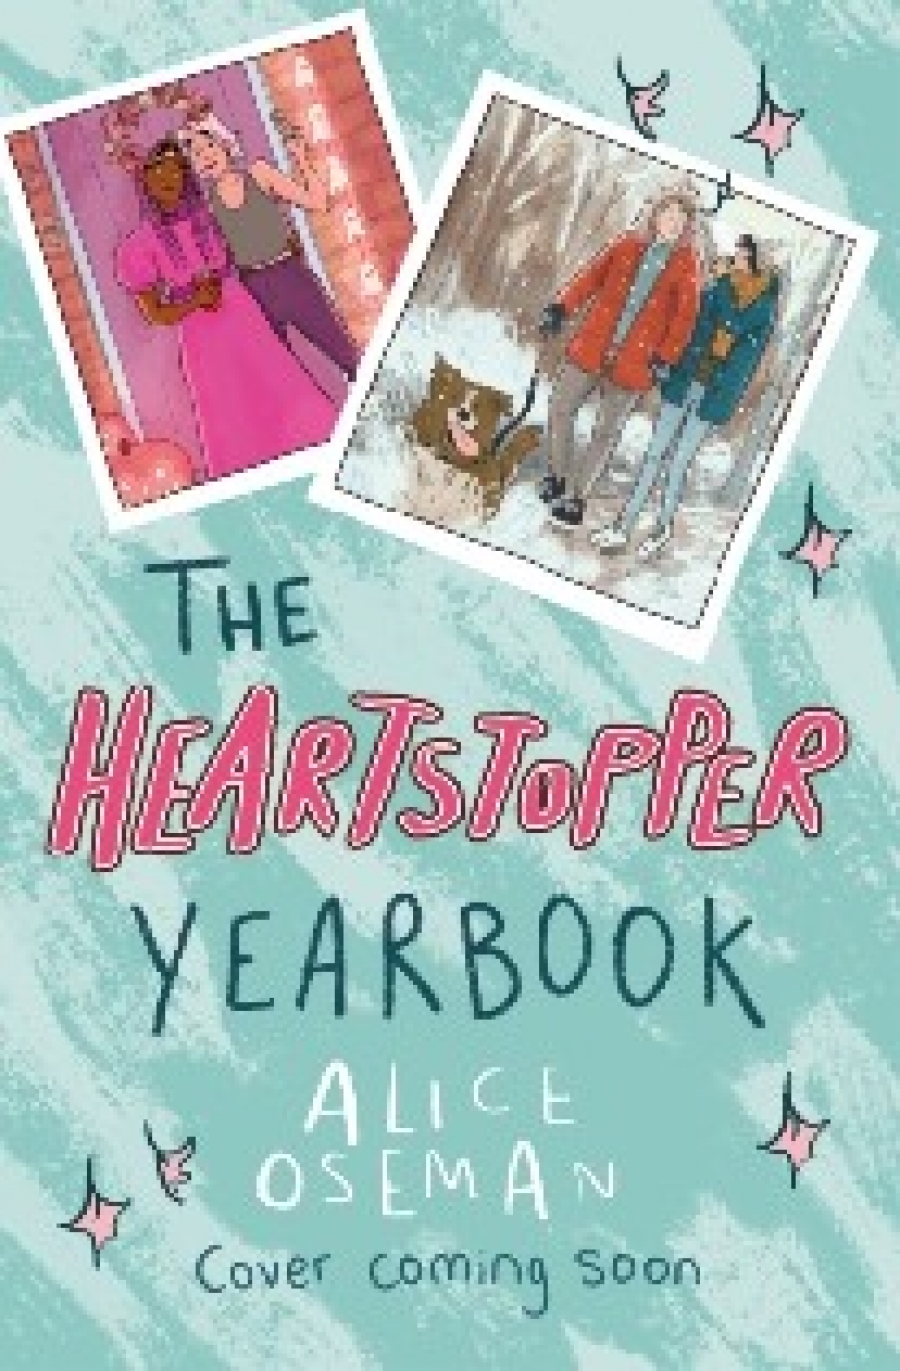 Alice, Oseman Heartstopper yearbook 